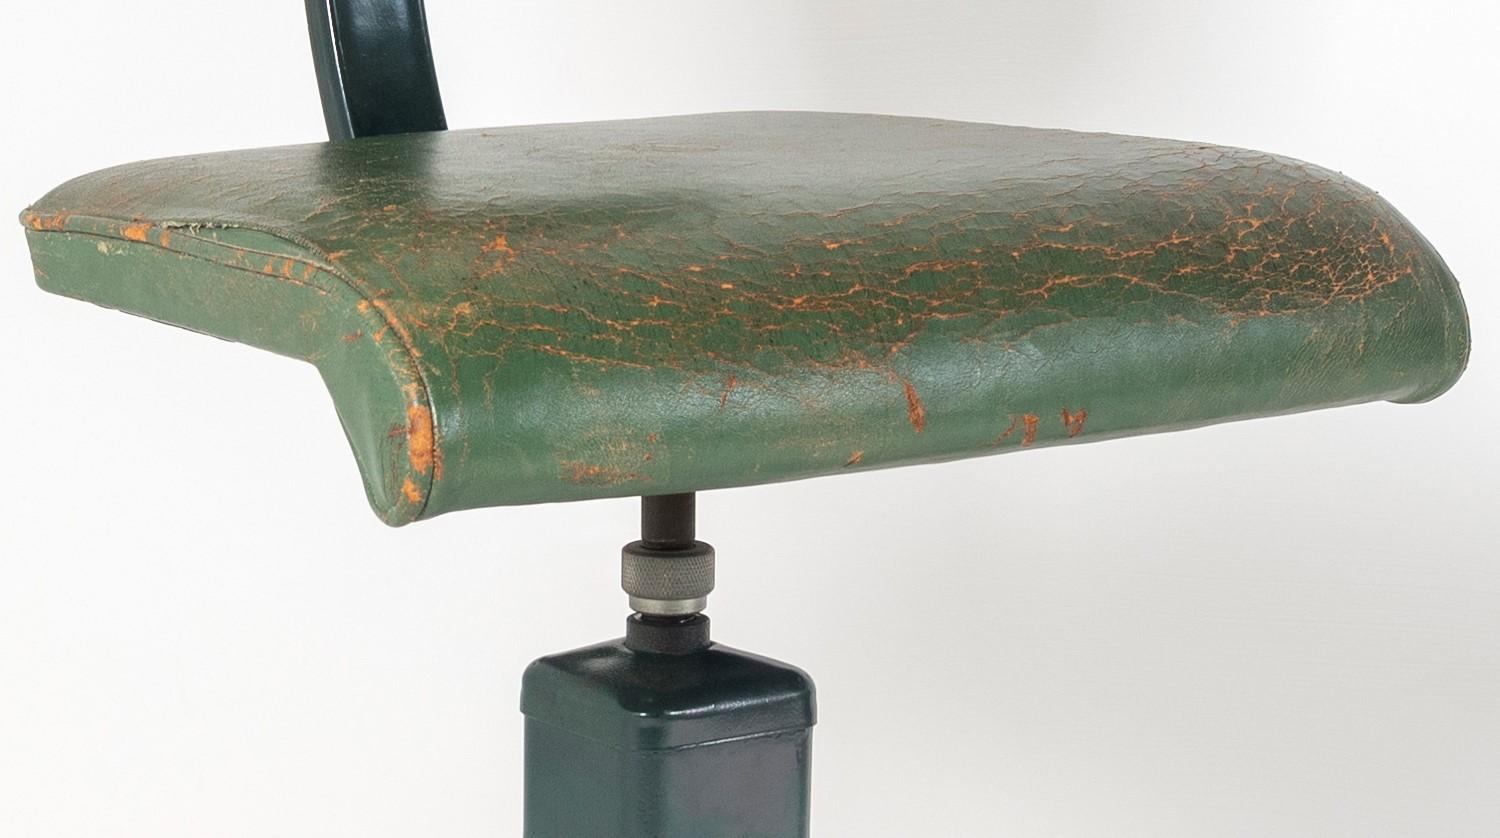 Un rare et très inhabituel tabouret d'usine évasé des années 1950, par Evertaut. Il s'agit probablement d'une pièce d'usine spéciale ou d'une pièce d'exposition.
En excellent état d'origine, avec une belle usure et patine du siège, il y a une